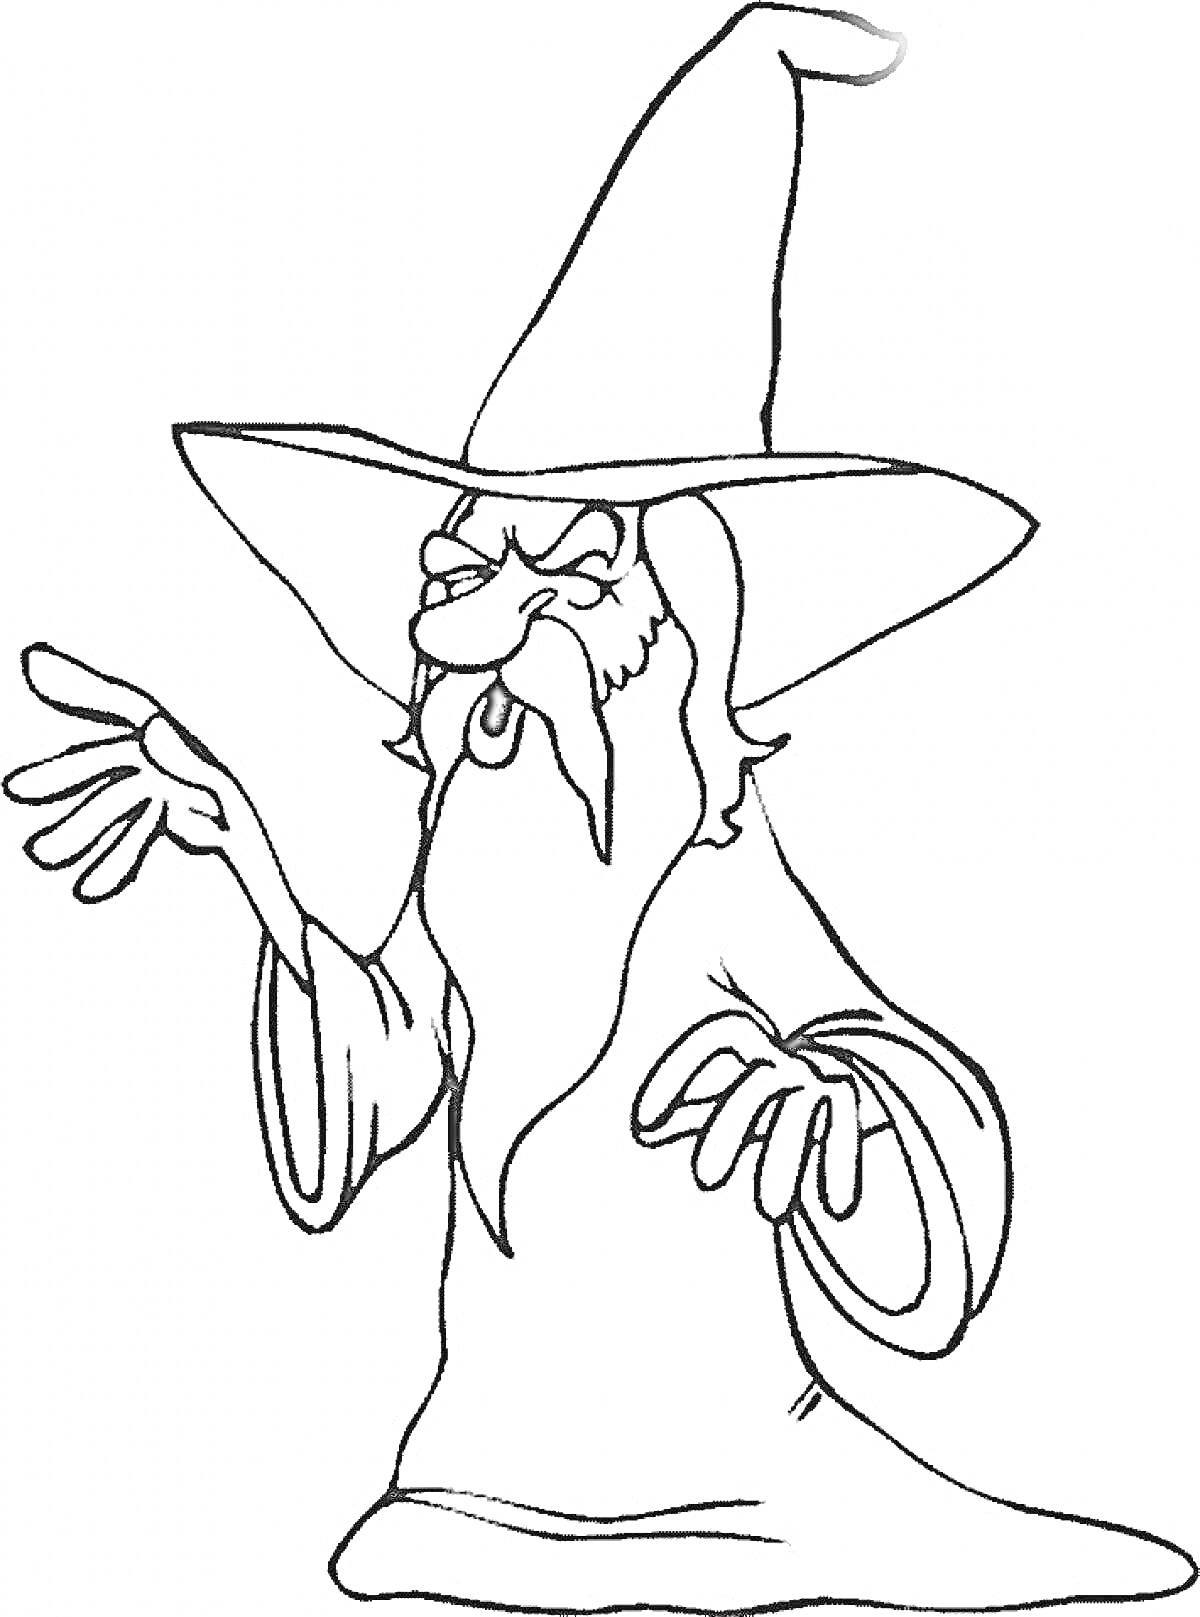 Раскраска Волшебник в высокой шляпе с длинной бородой и вытянутыми руками